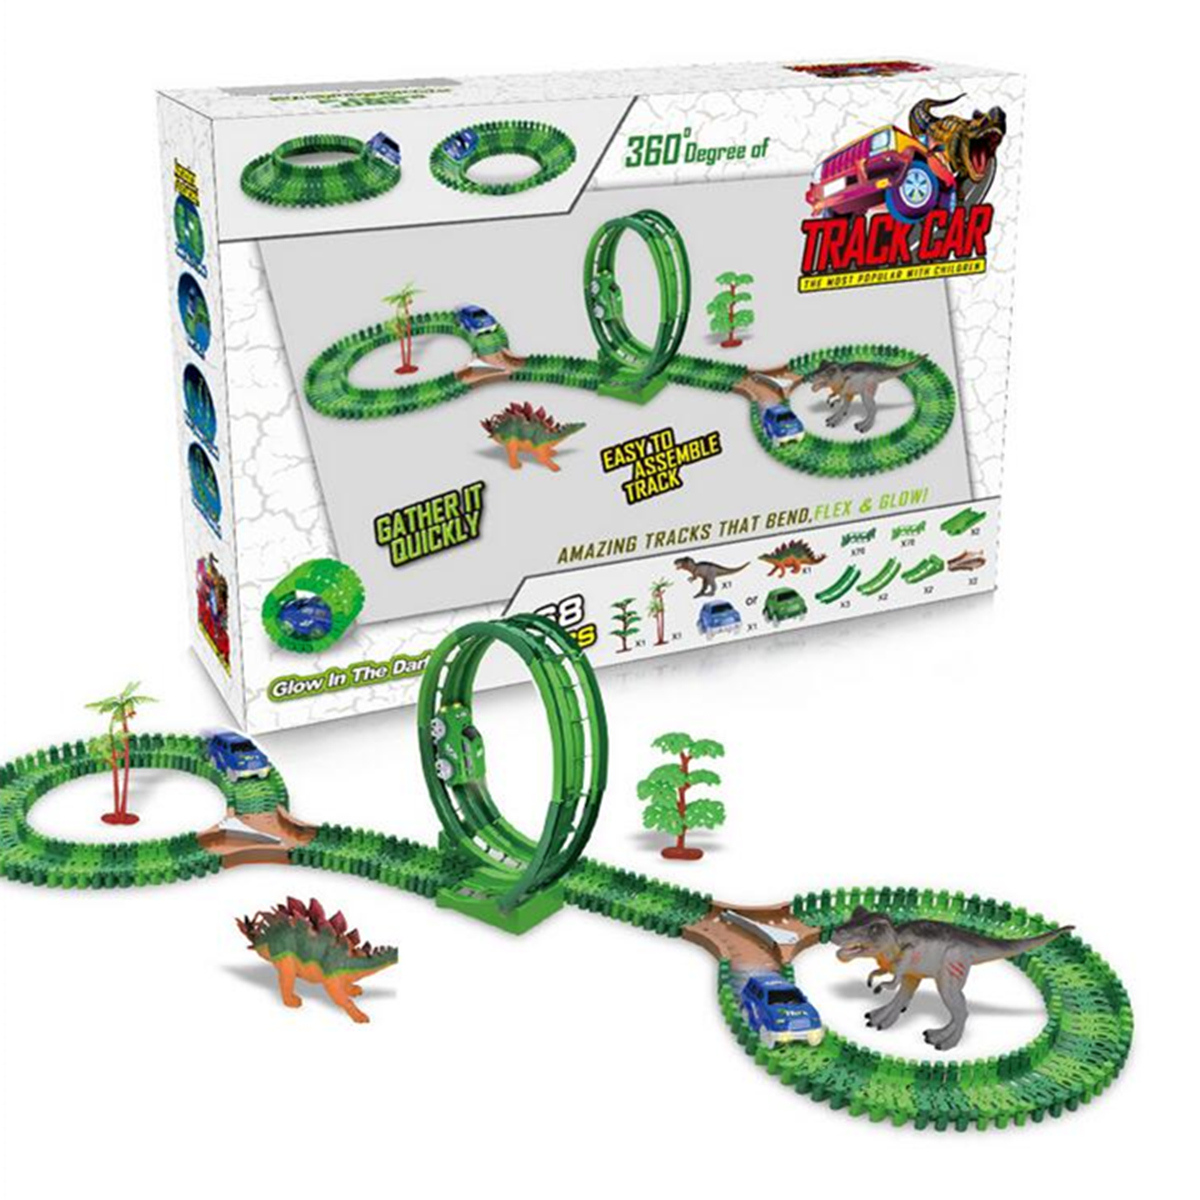 

Слот для динозавров Авто Race Track Toys Kids Bridge Батарея Игрушечный парк Ролик Coaster